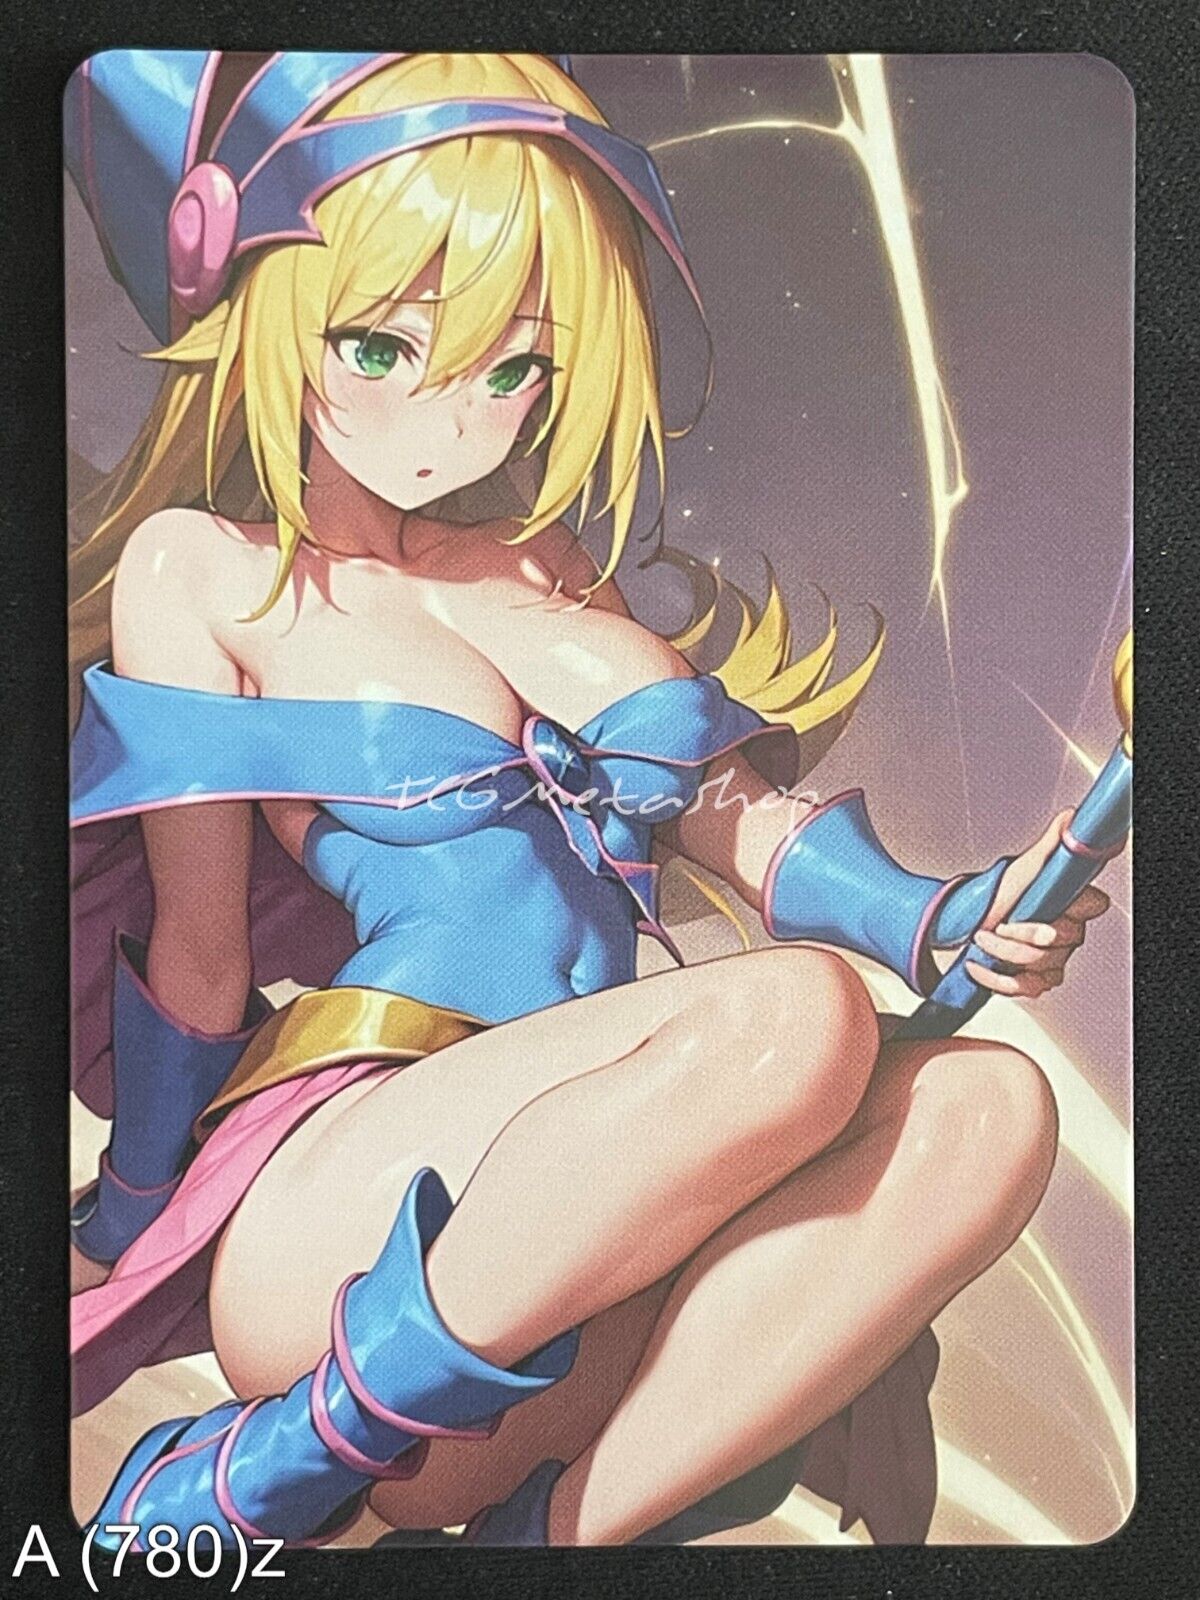 🔥 A 780 Dark Magician Girl Yu-Gi-Oh! Goddess Story Anime Waifu Card ACG 🔥